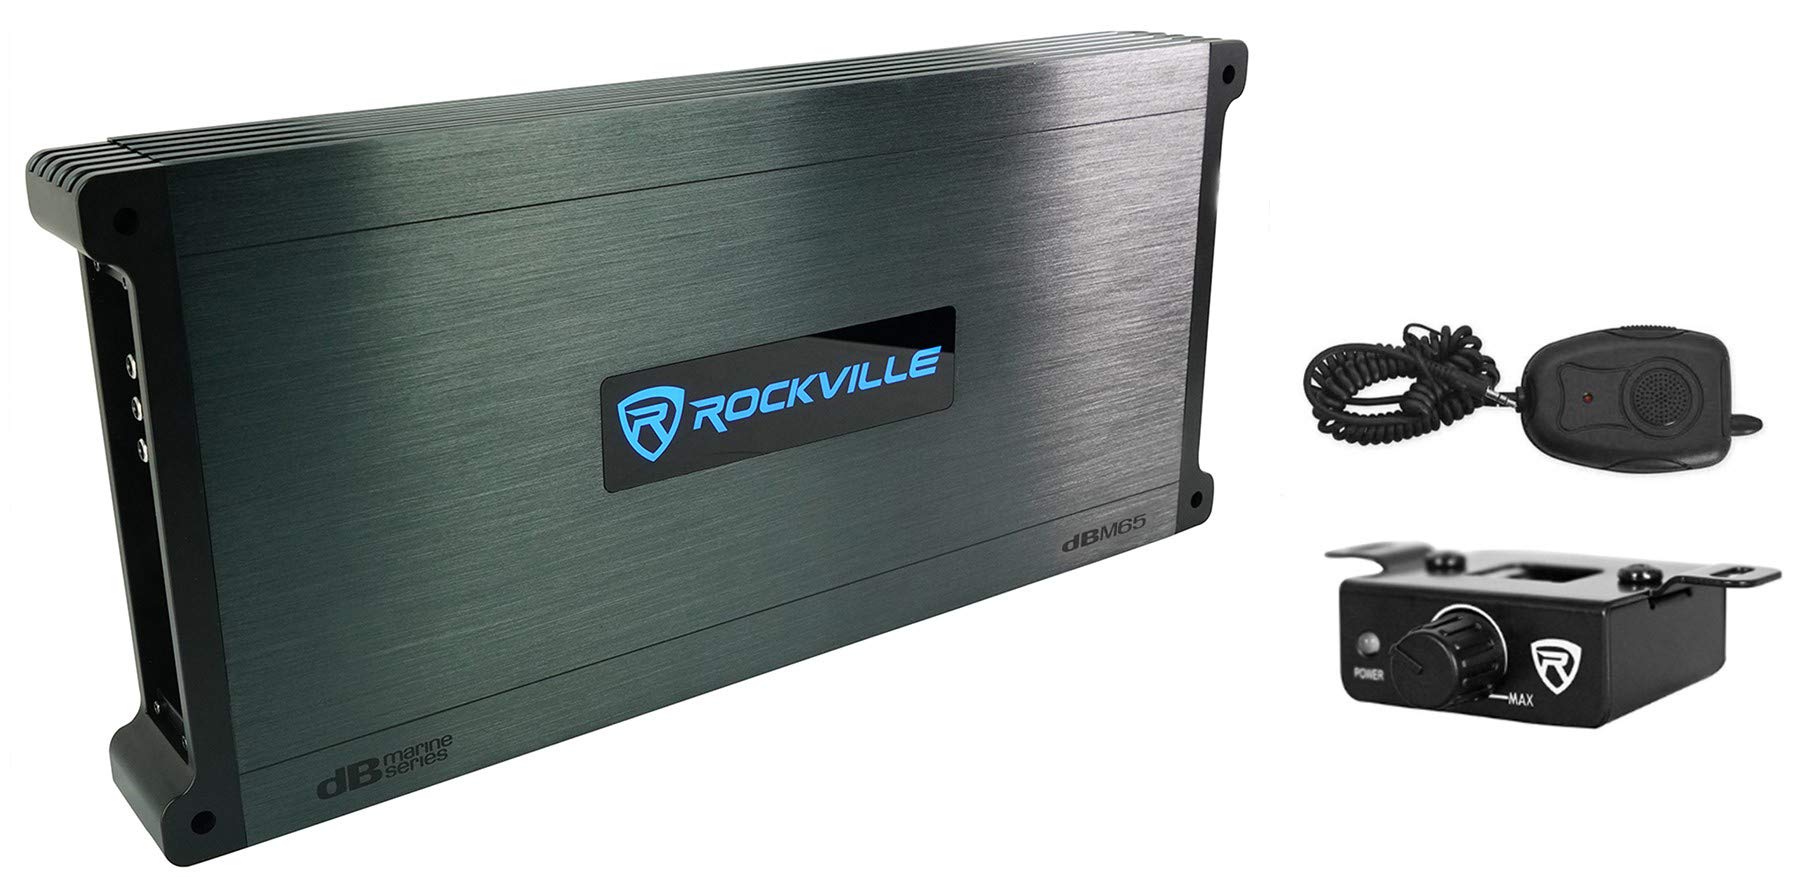 Rockville DBM65 6-Channel 2600w Peak/660w RMS CEA Rated Marine/Boat Amplifier